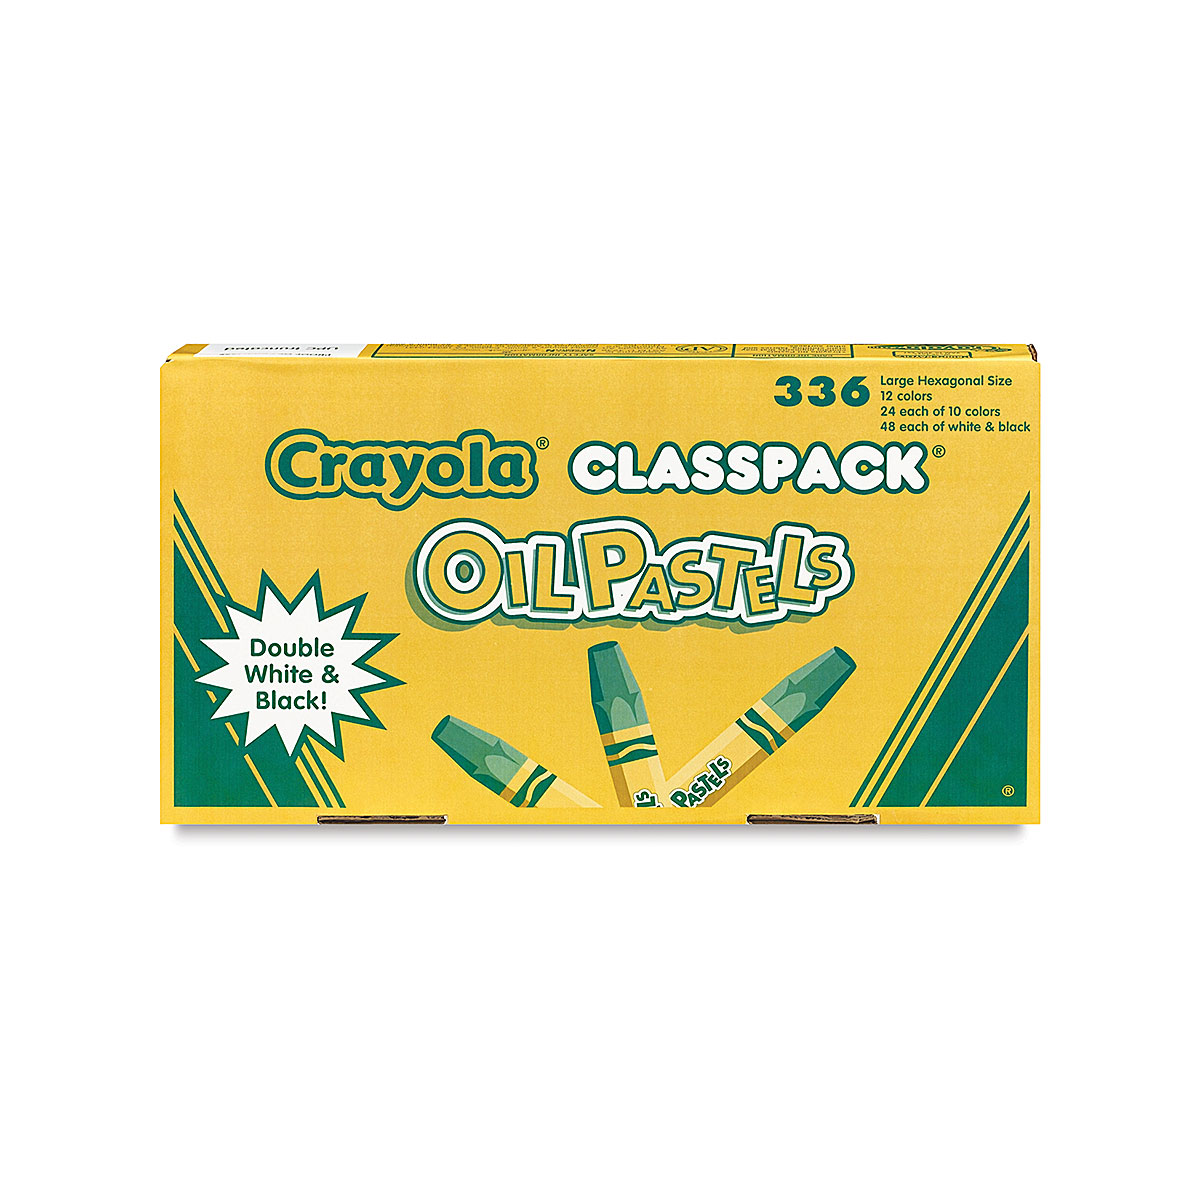 Crayola Oil Pastels, Nontoxic - 16 pastels